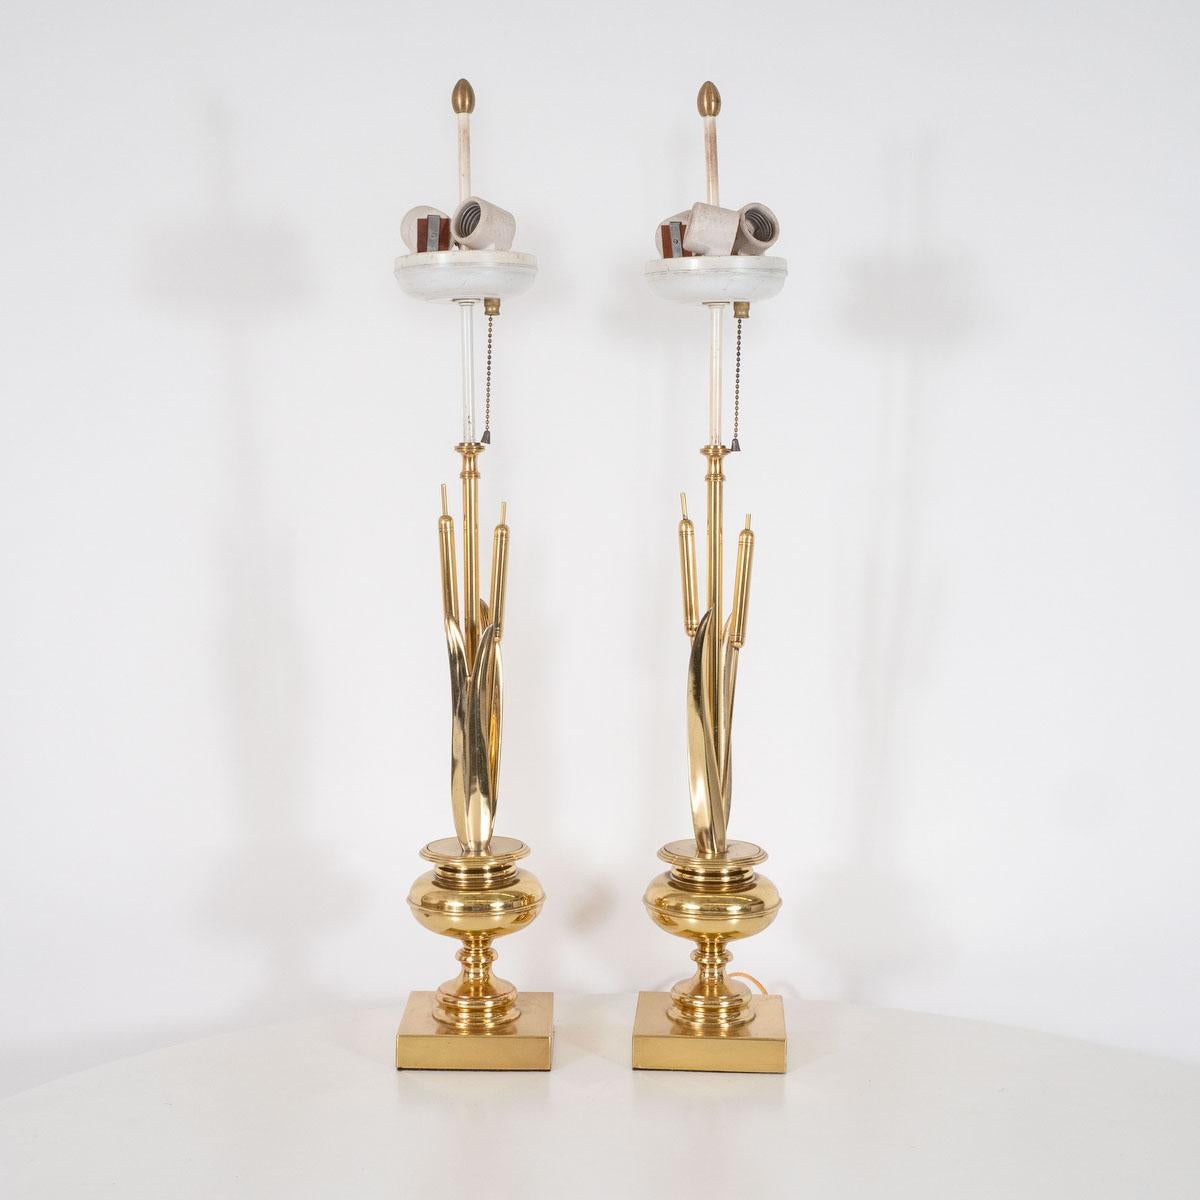 Zwei stilisierte Tischlampen aus Messing in Form von Binsen mit Urnensockeln.